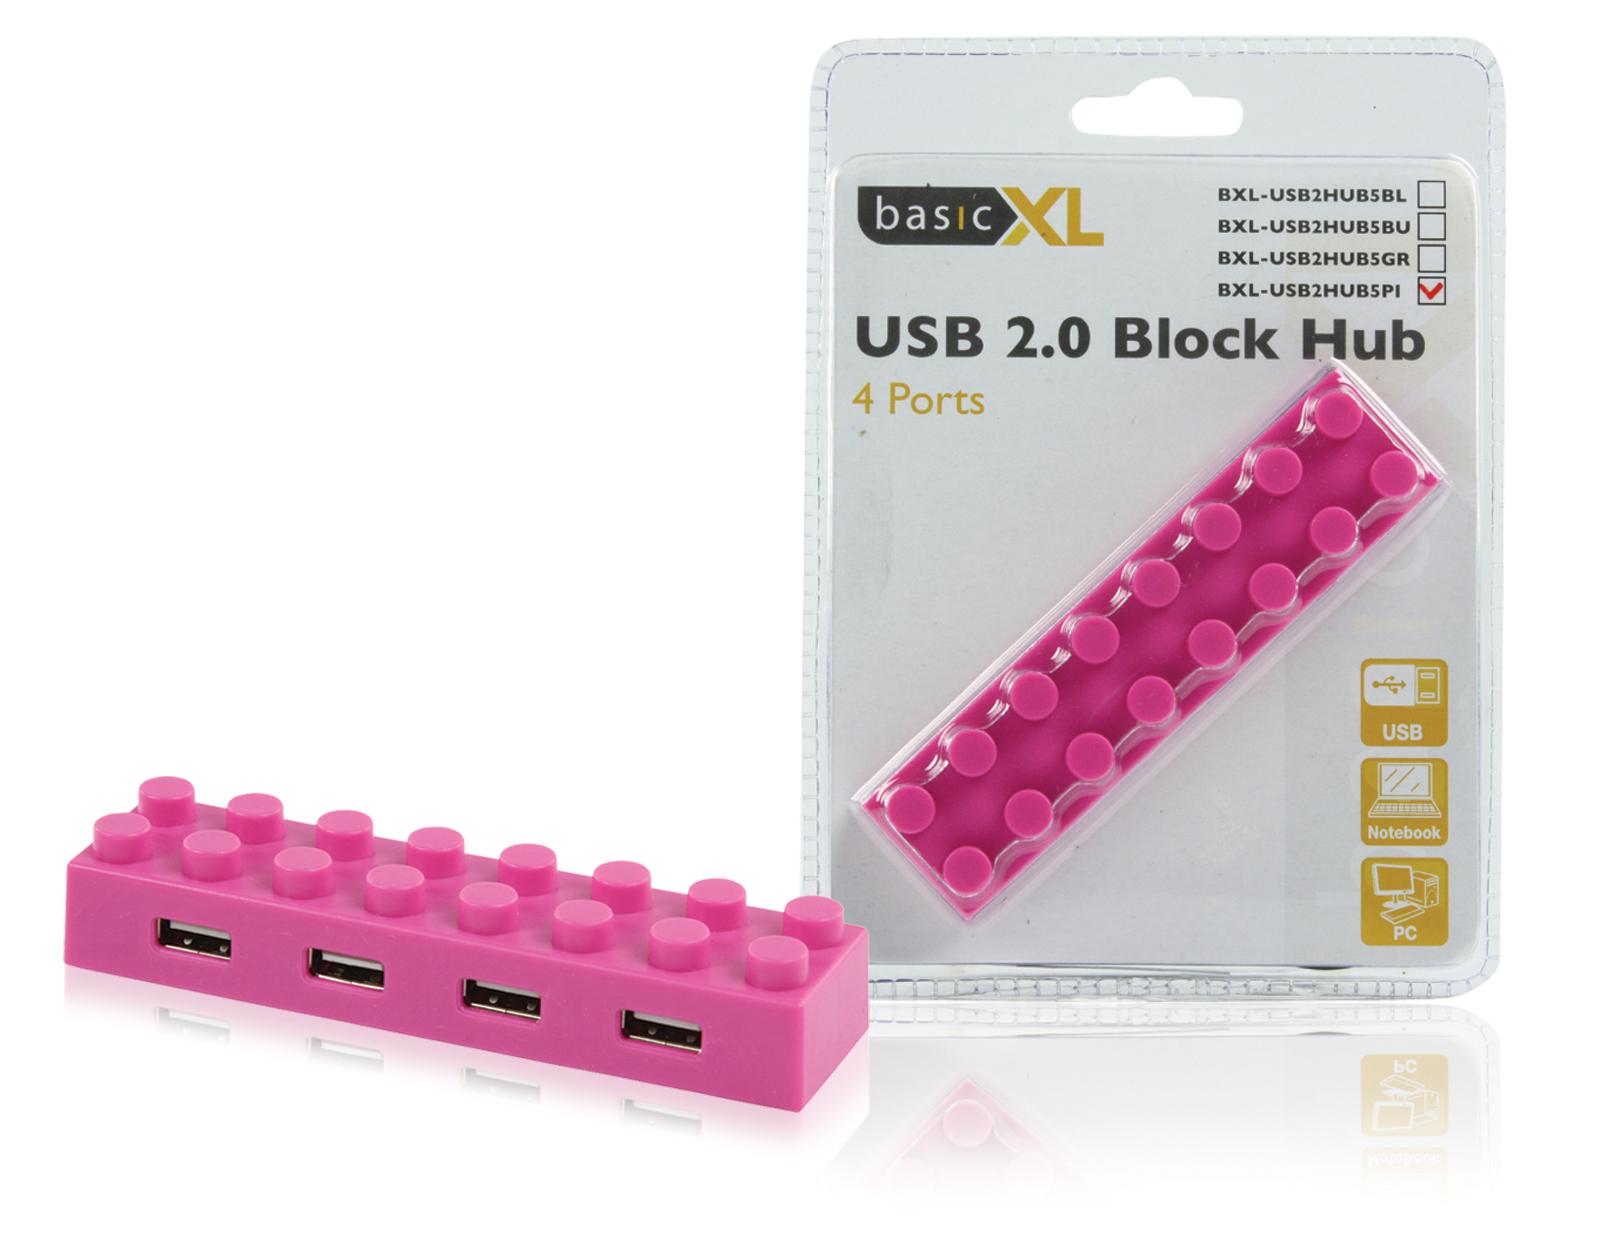 Foto basicXL Concentrador USB 2.0 de 4 puertos rosa basicXL foto 563019